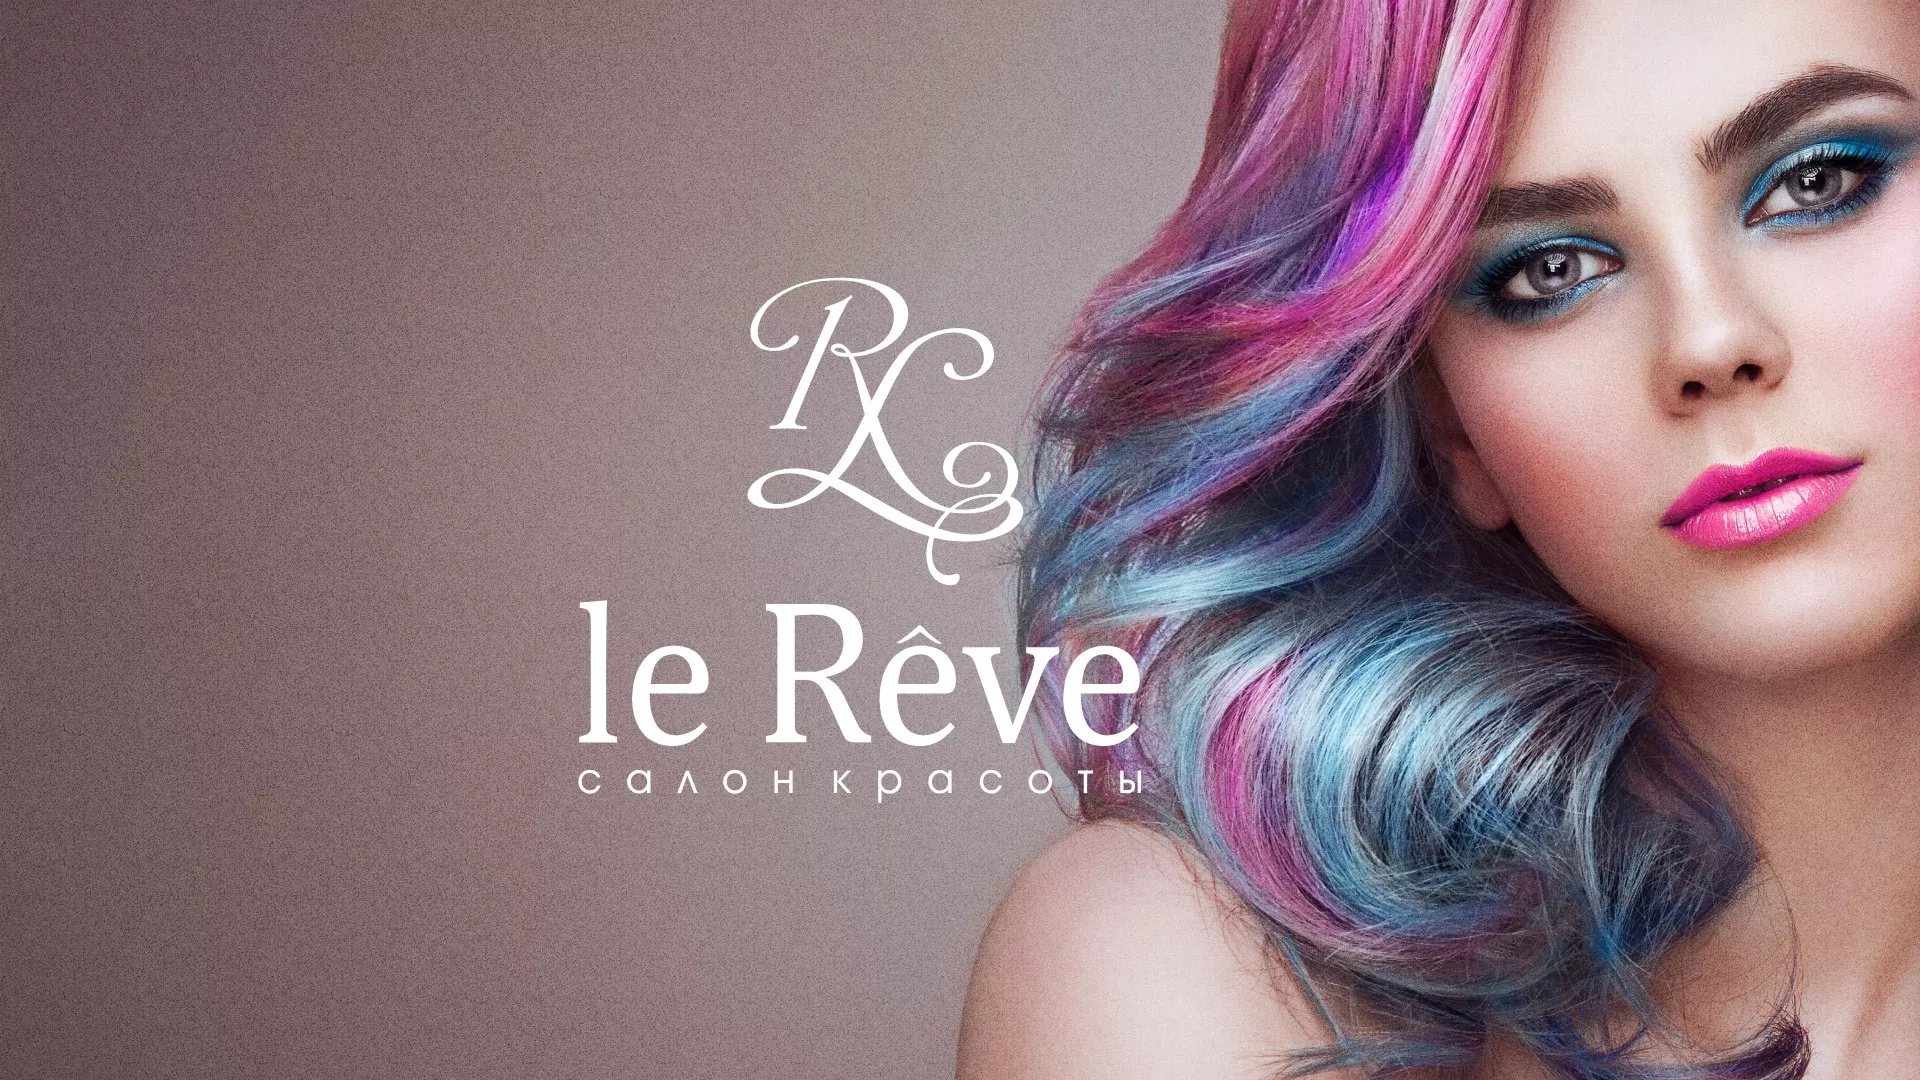 Создание сайта для салона красоты «Le Reve» в Льгове